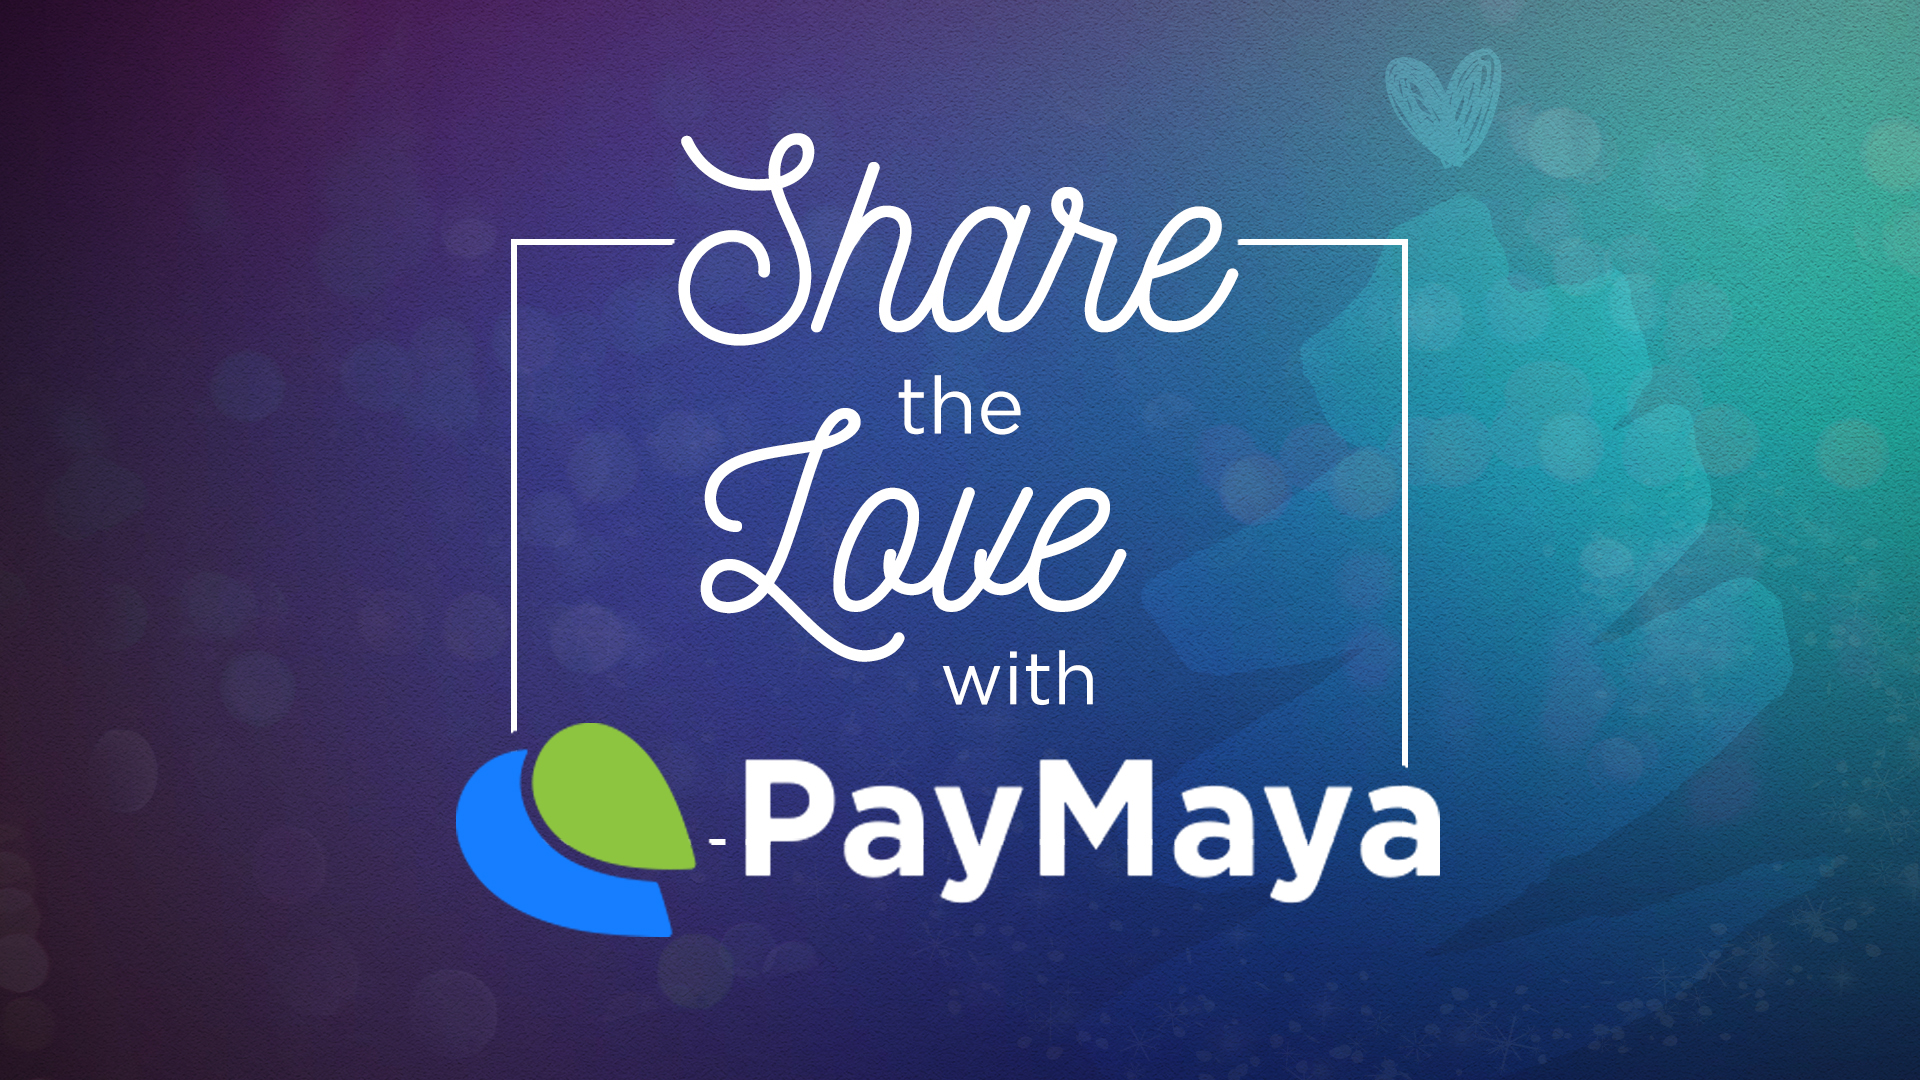 PayMaya #ShareTheLove